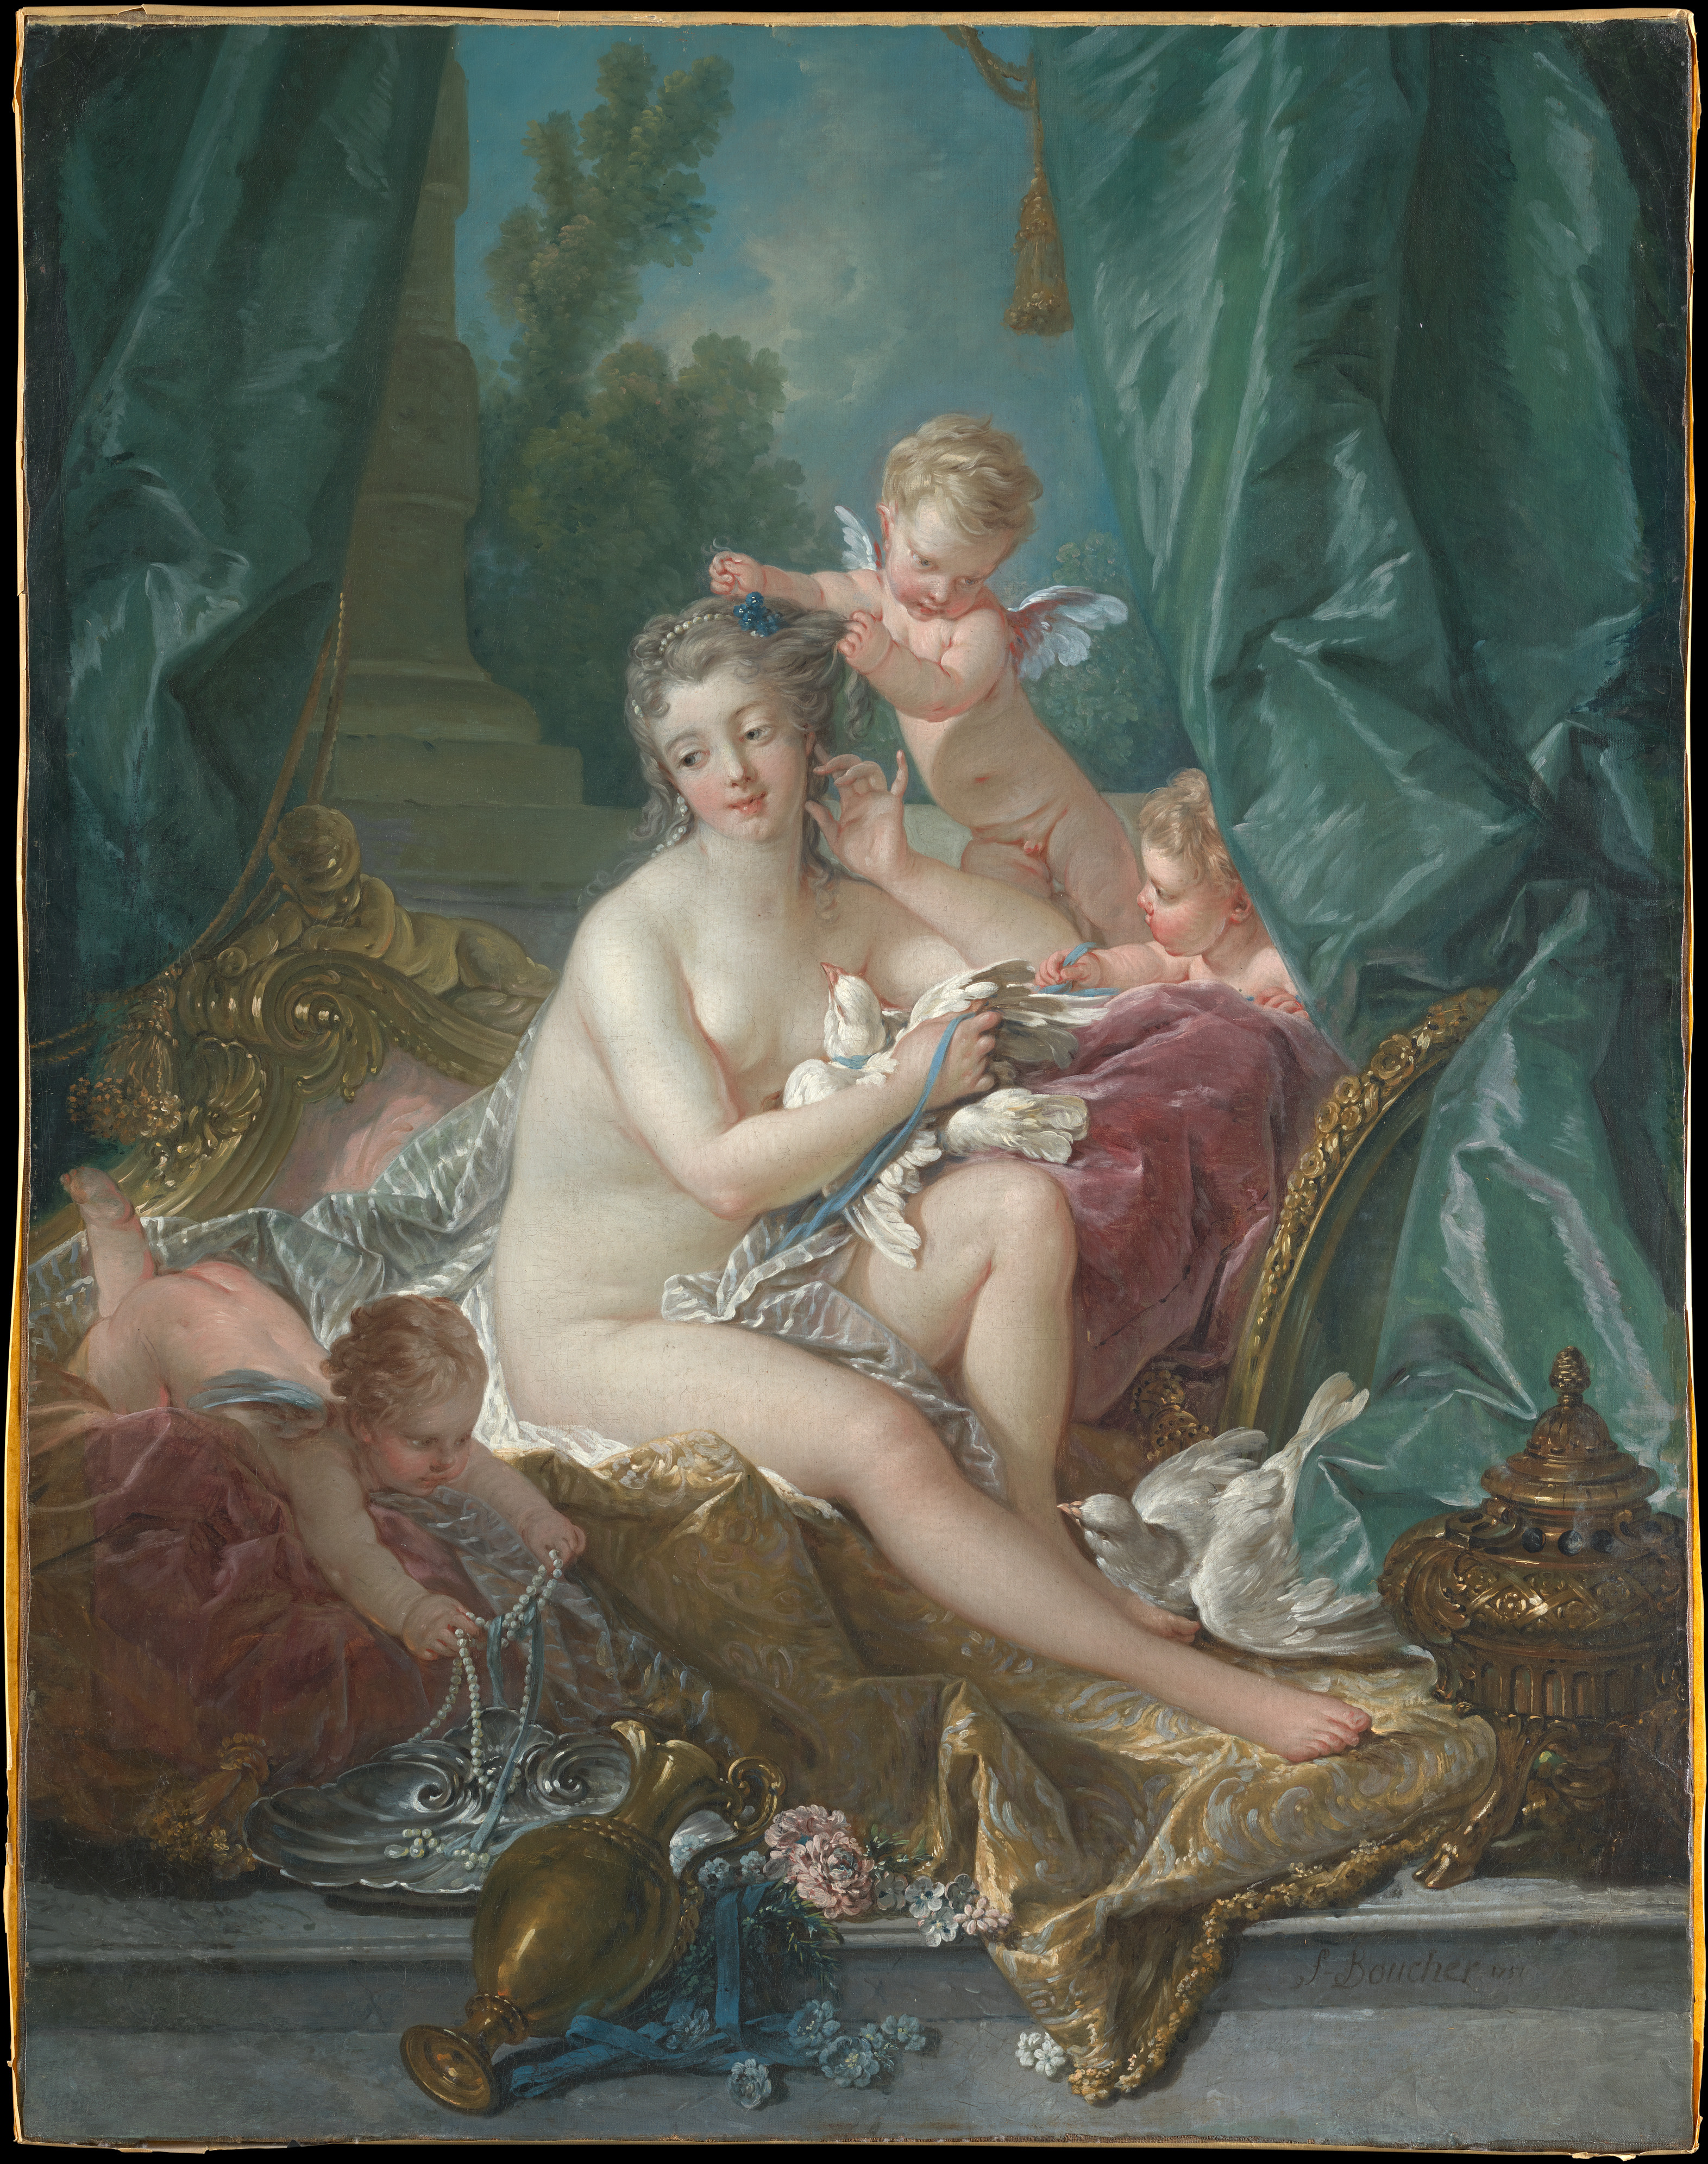 維納斯的梳妝室 by Francois Boucher - 西元1751 - 108.3 x 85.1 公分 